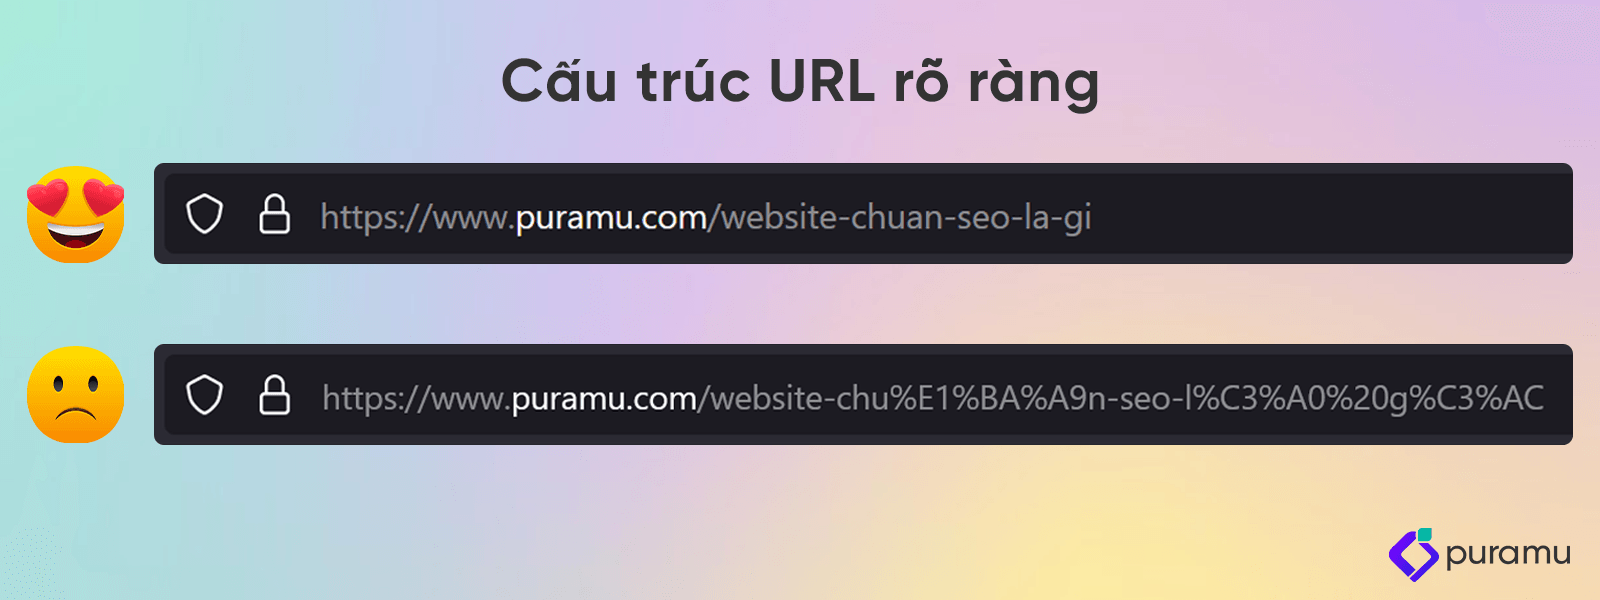 Cấu trúc URL rõ ràng